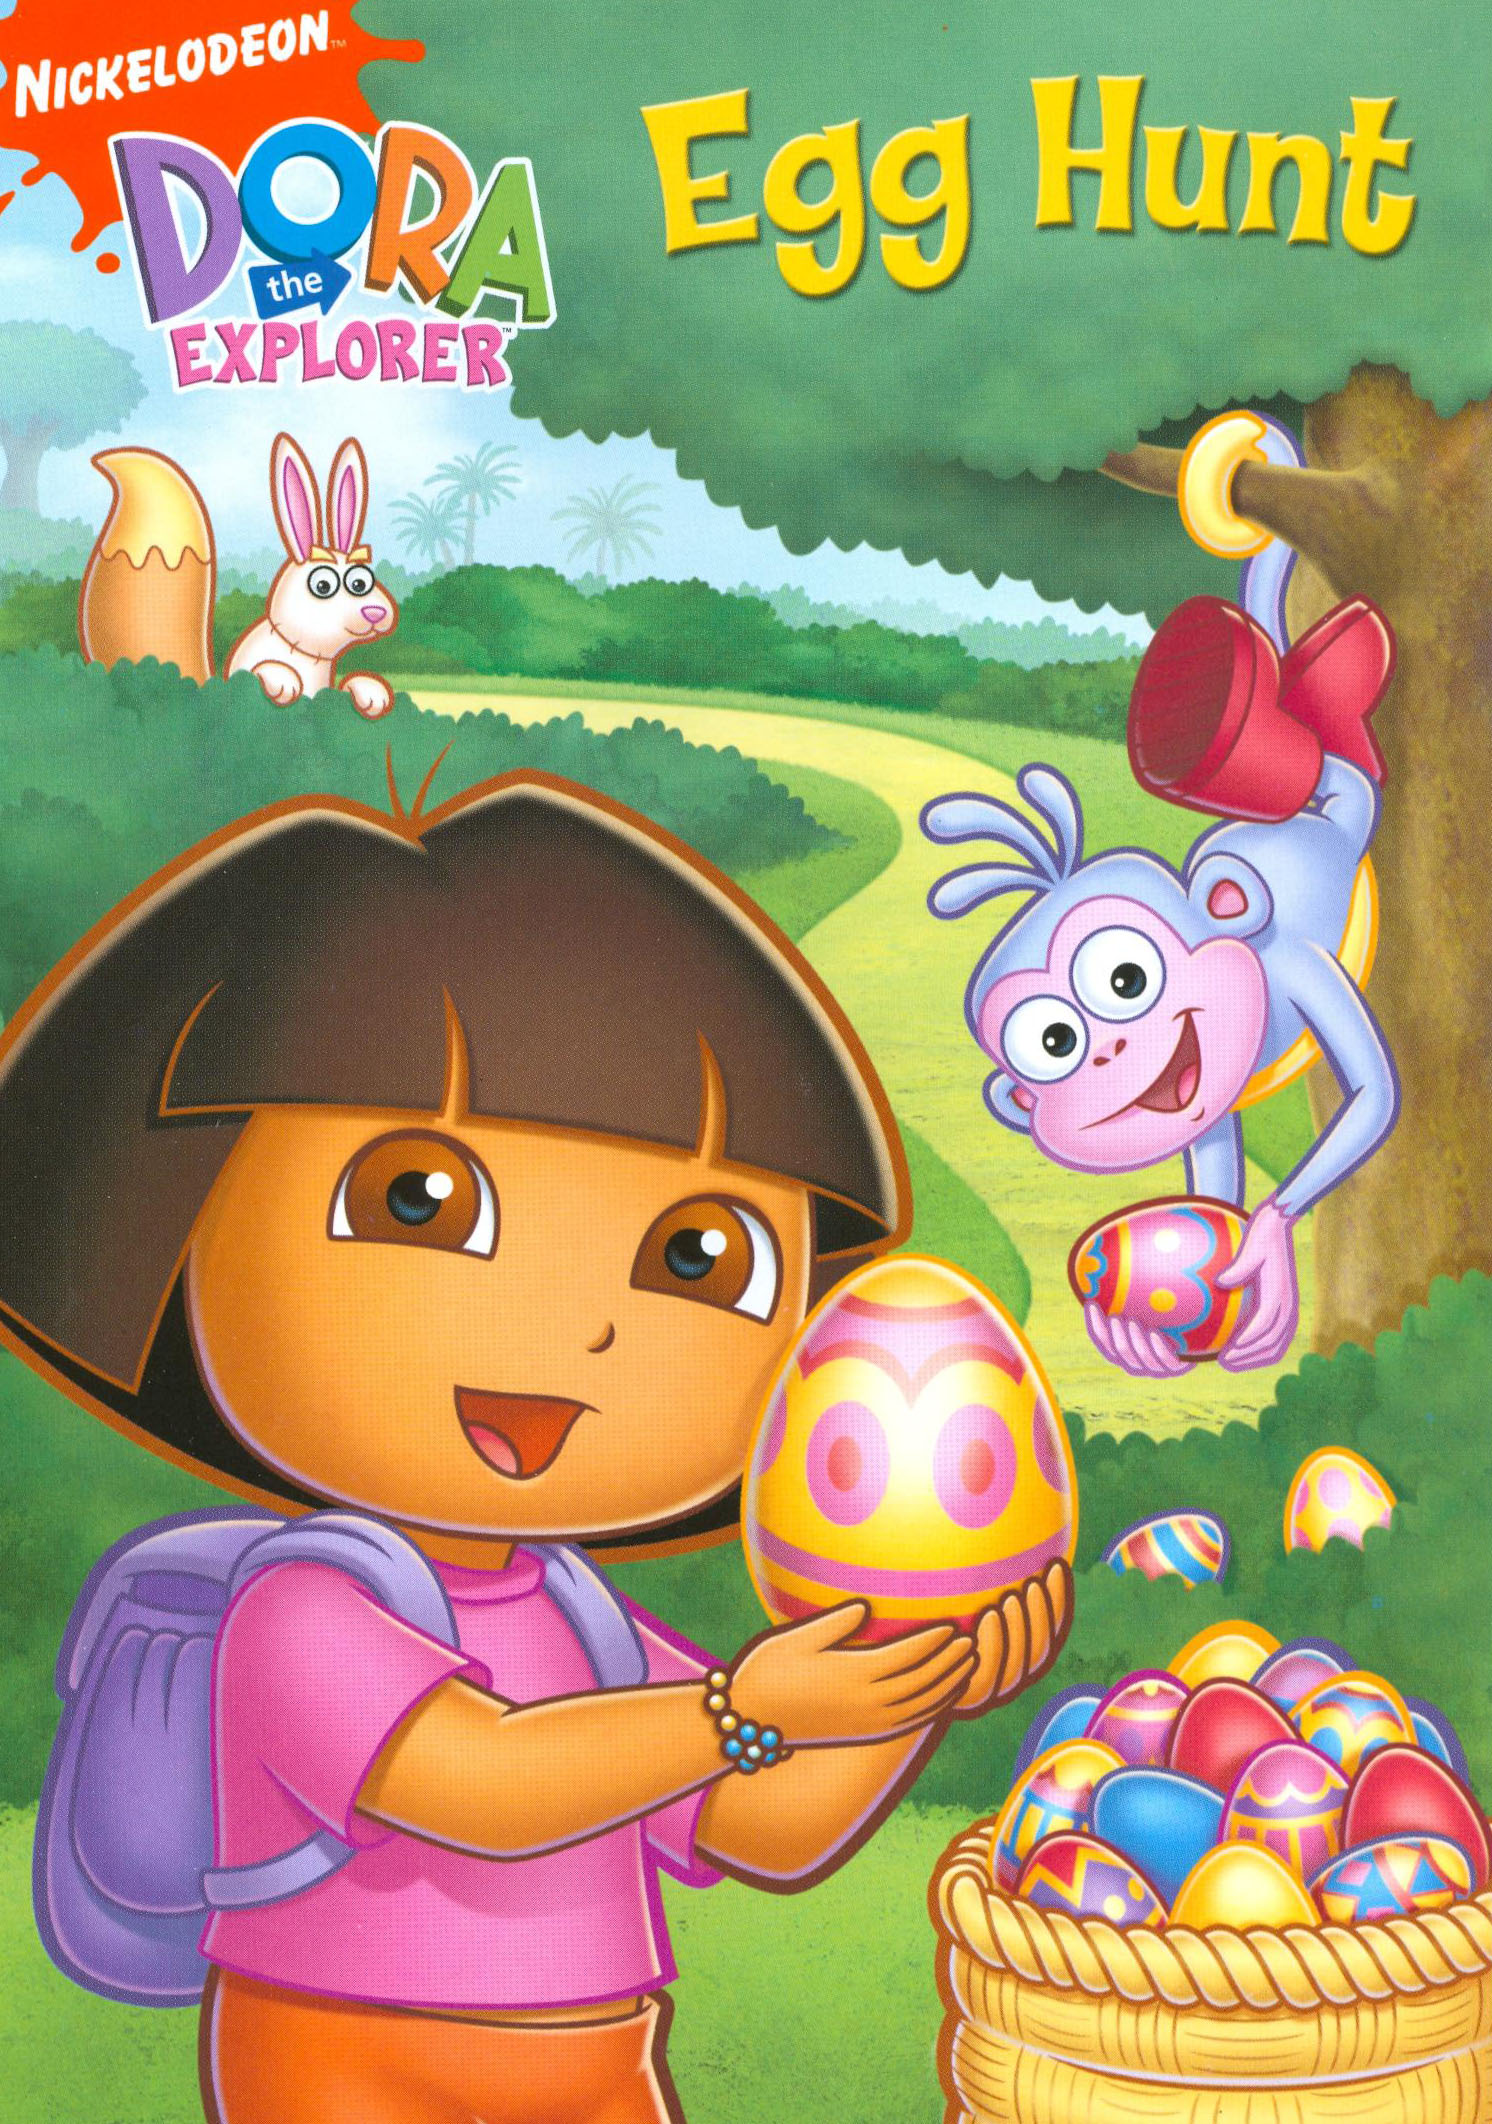 Dora the Explorer: The Egg Hunt DVD - Best Buy